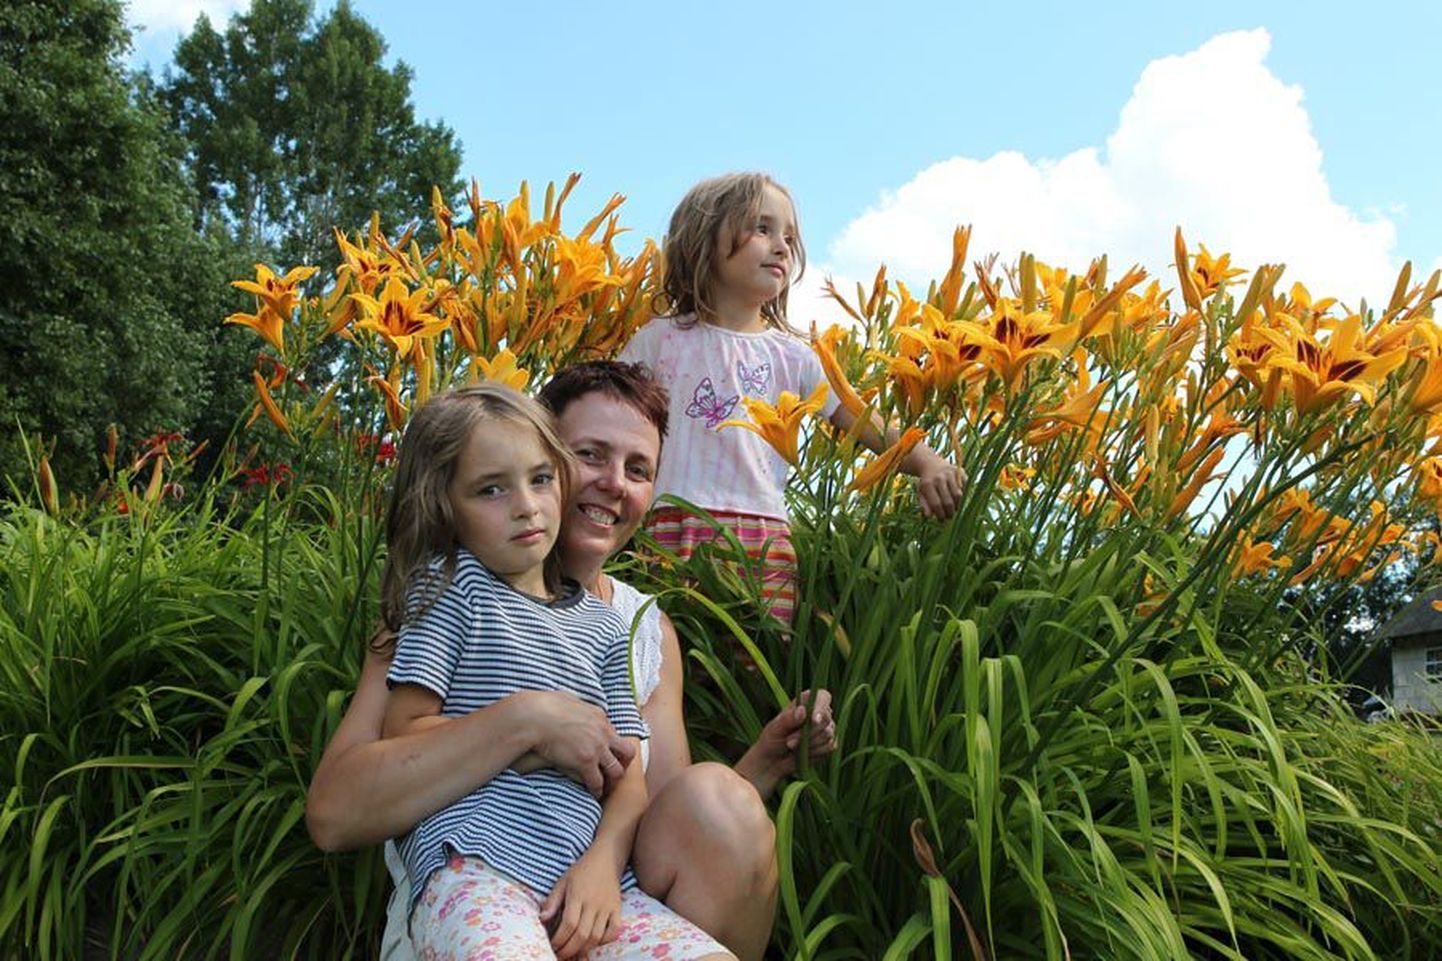 Nõrga talu perenaine Krista Kukk ja tema kaksikutest tütred ootavad lillehuvilisi sel nädalal endale külla.